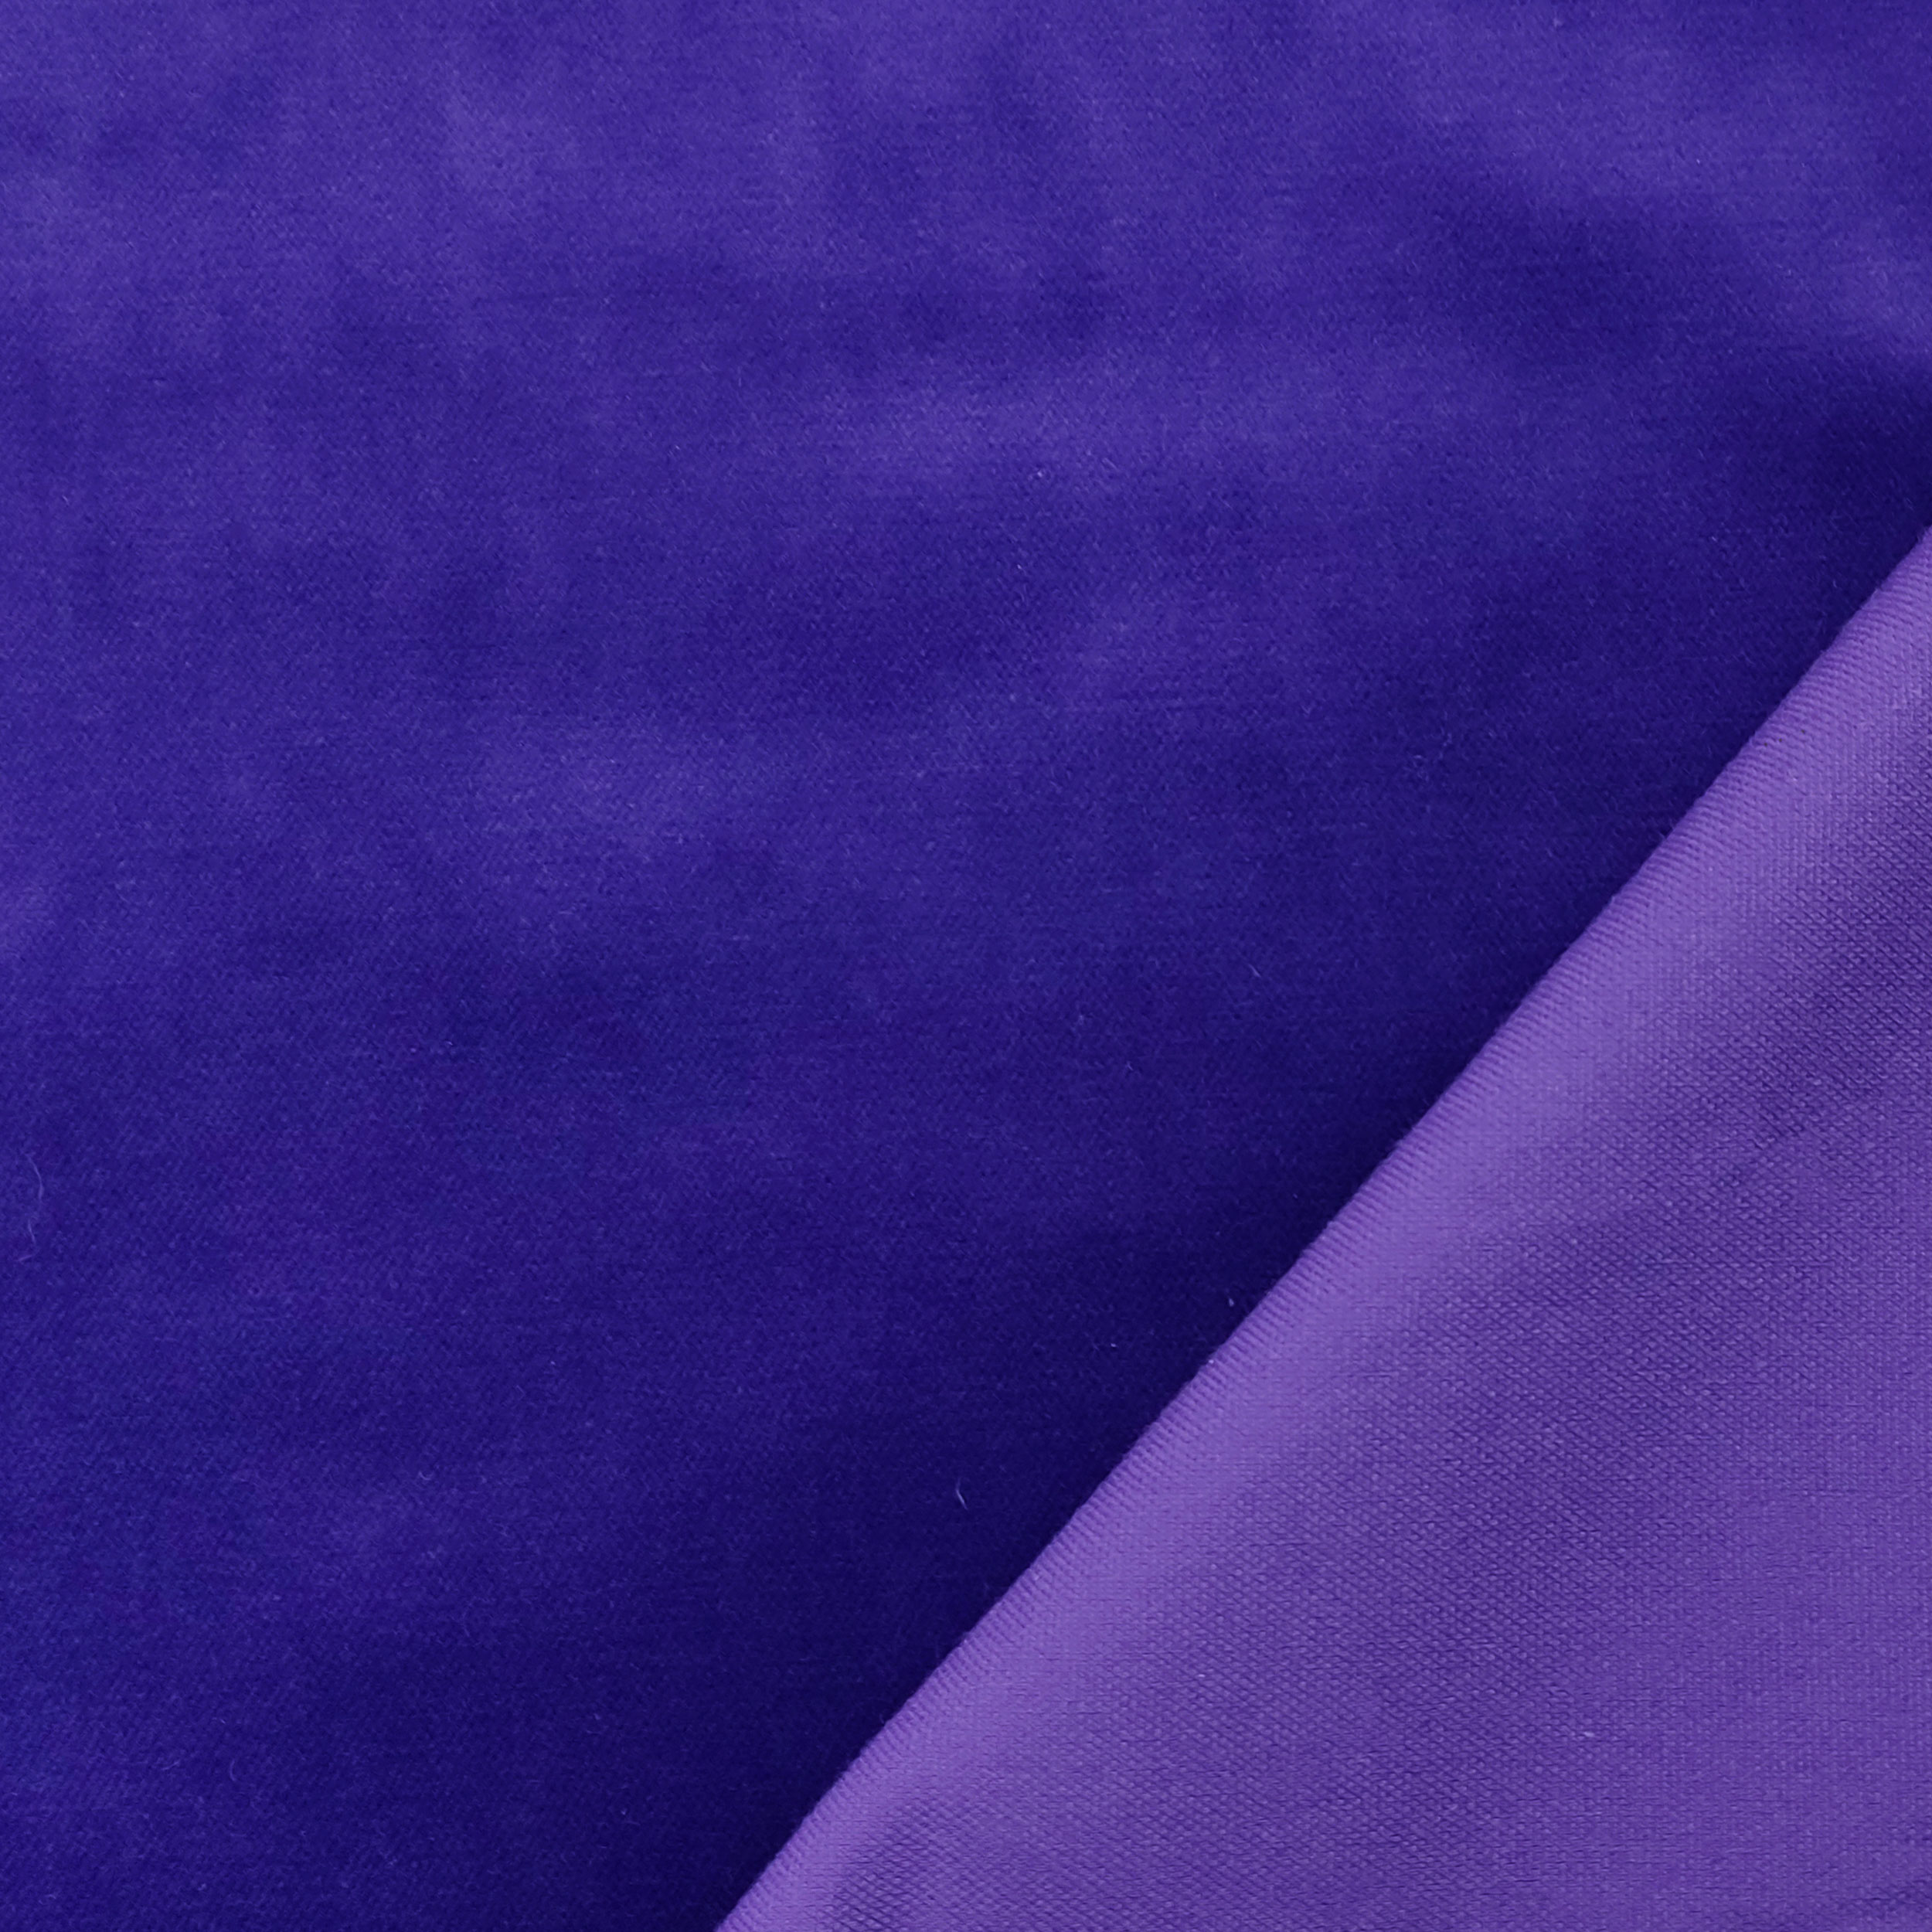 tessuto velluto viola